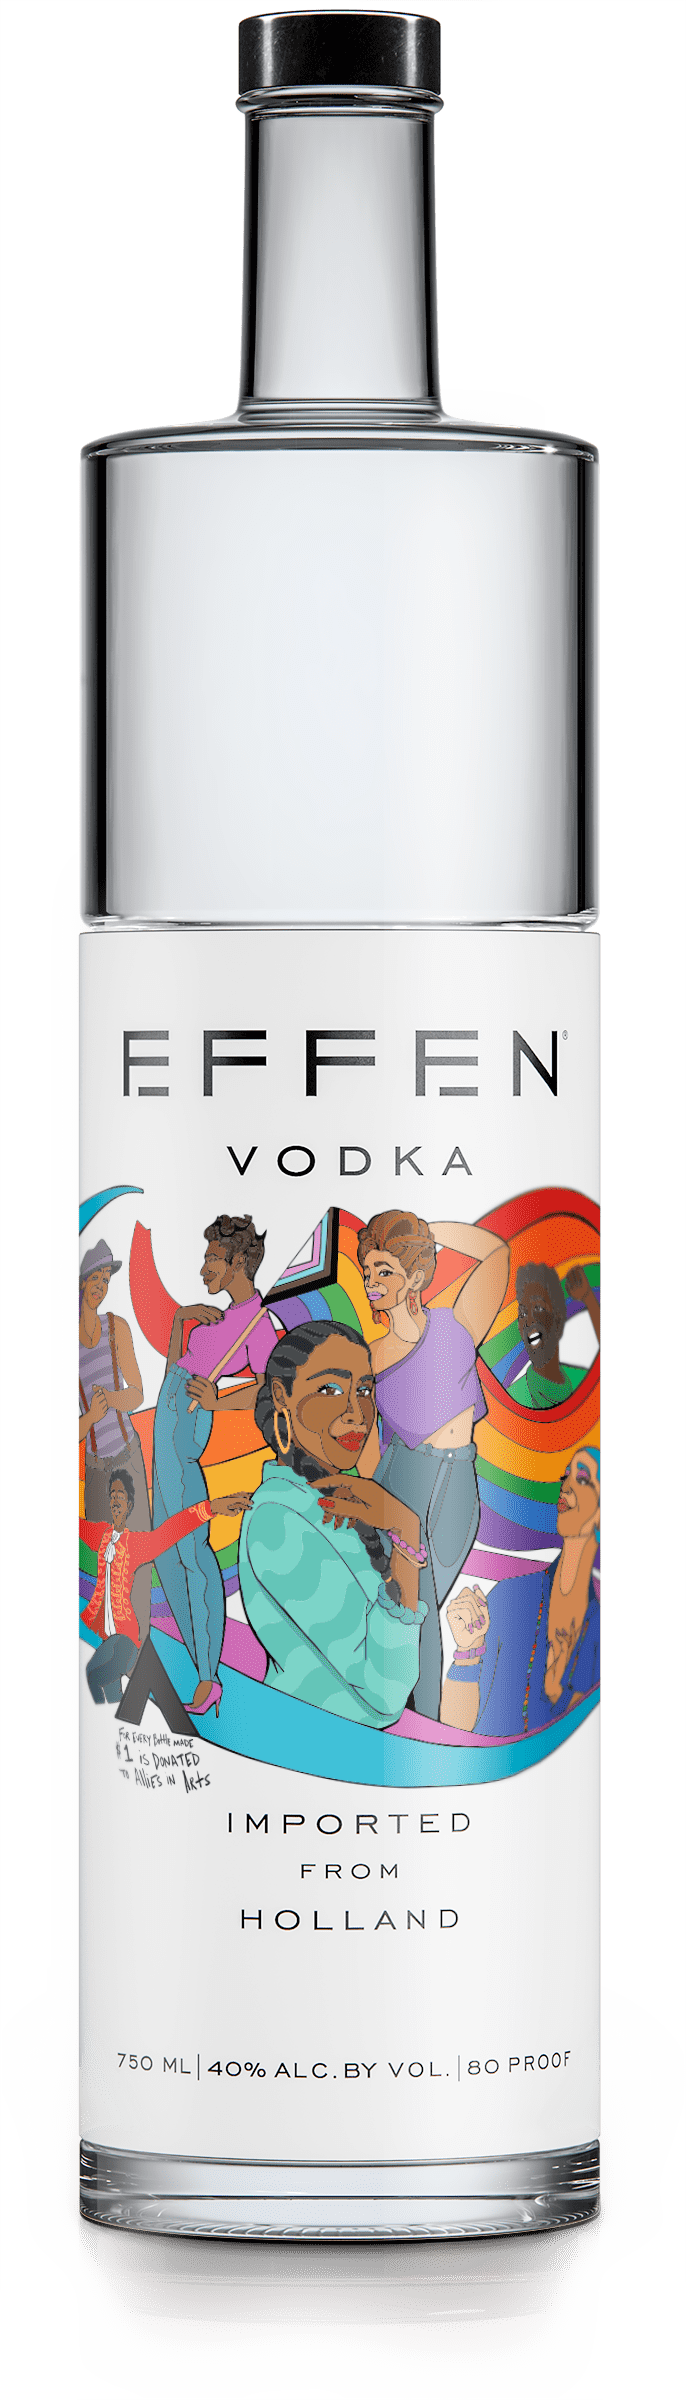 Effen Vodka Pride Bottle